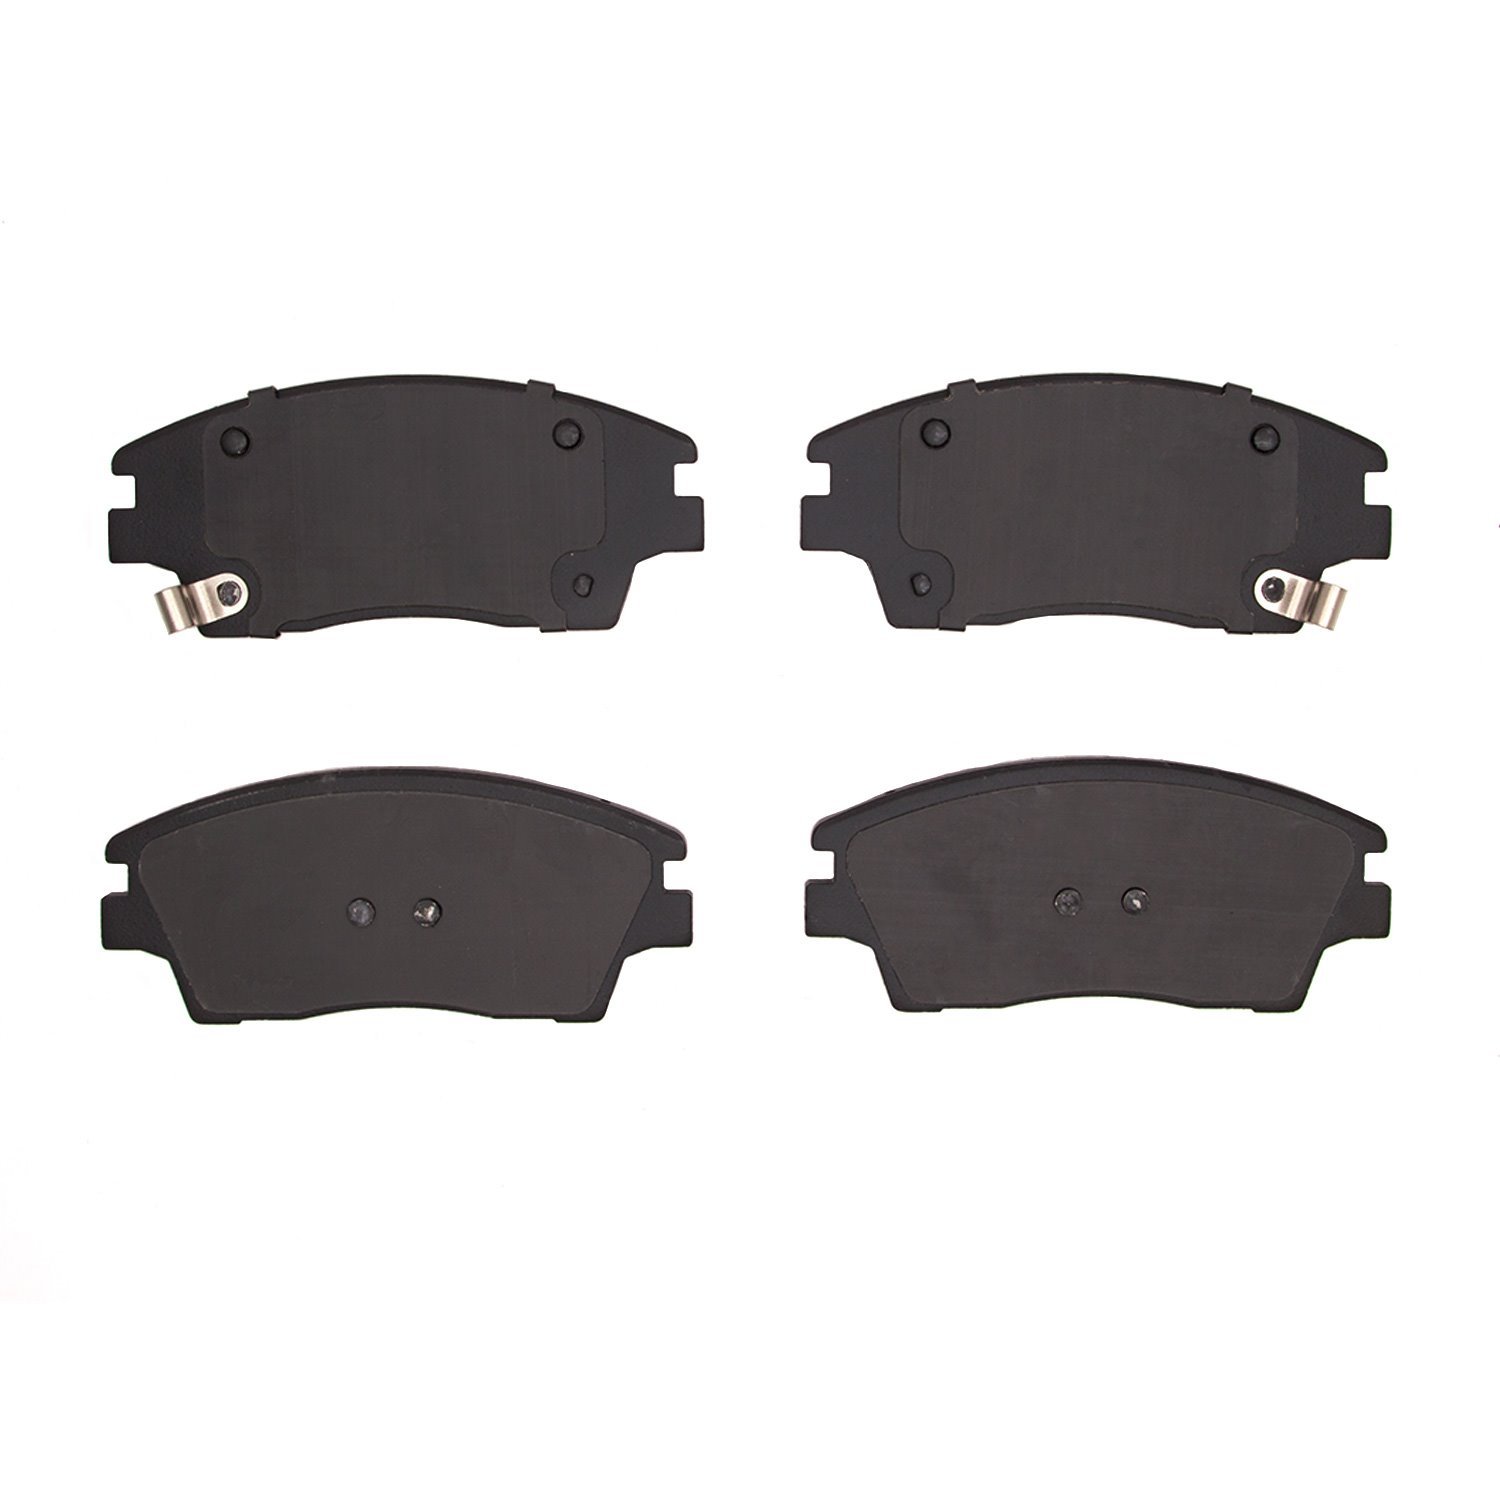 3000-Series Ceramic Brake Pads, Fits Select Kia/Hyundai/Genesis